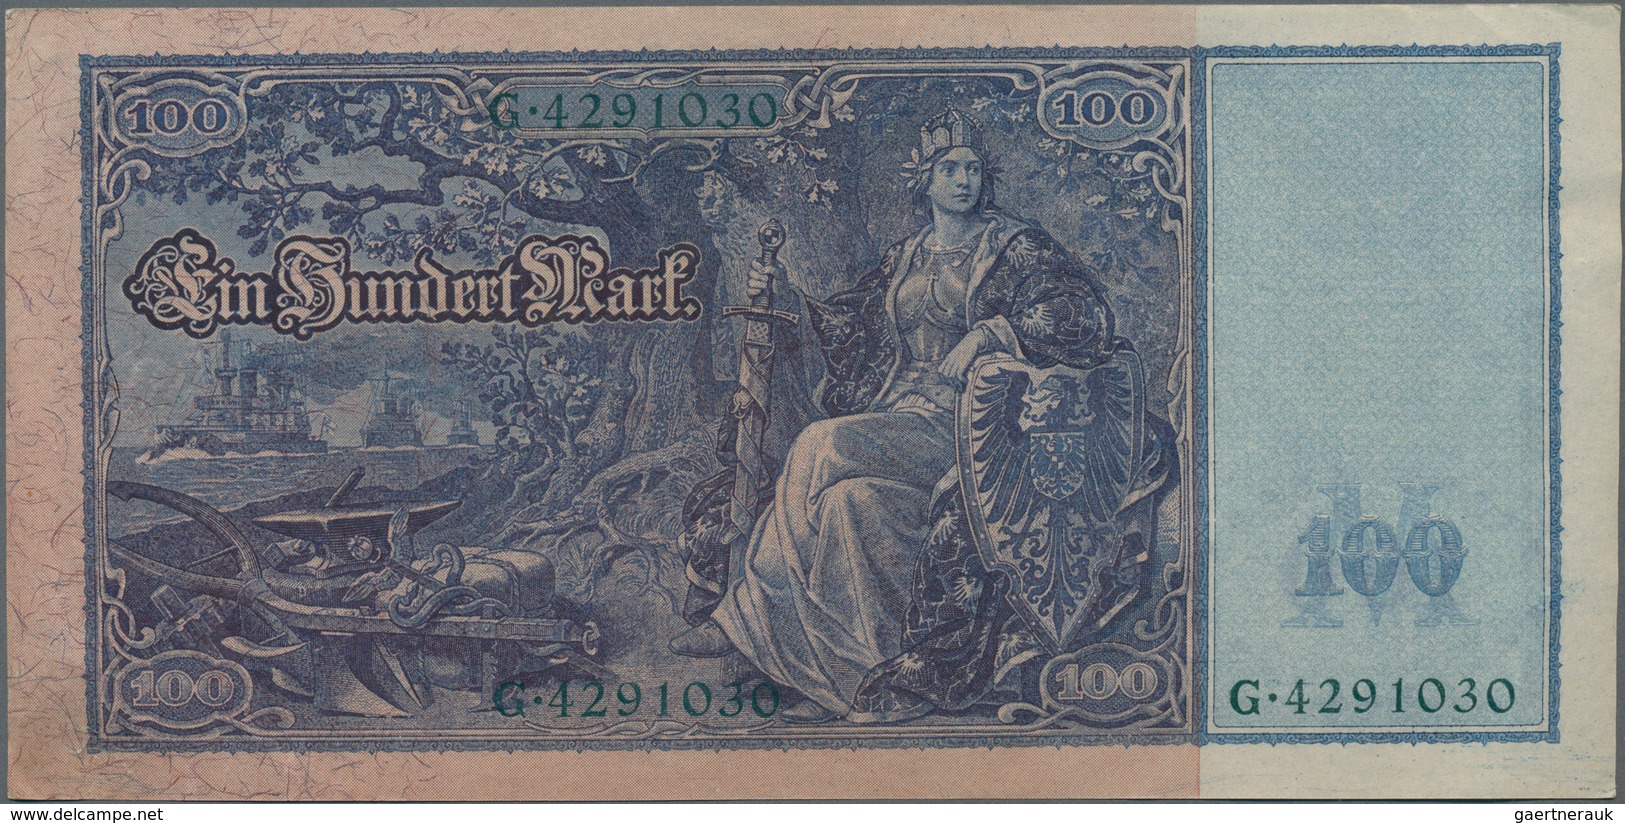 Deutschland - Deutsches Reich bis 1945: Kleines Lot mit 12 Banknoten der Serien 1908-1918, dabei 2x